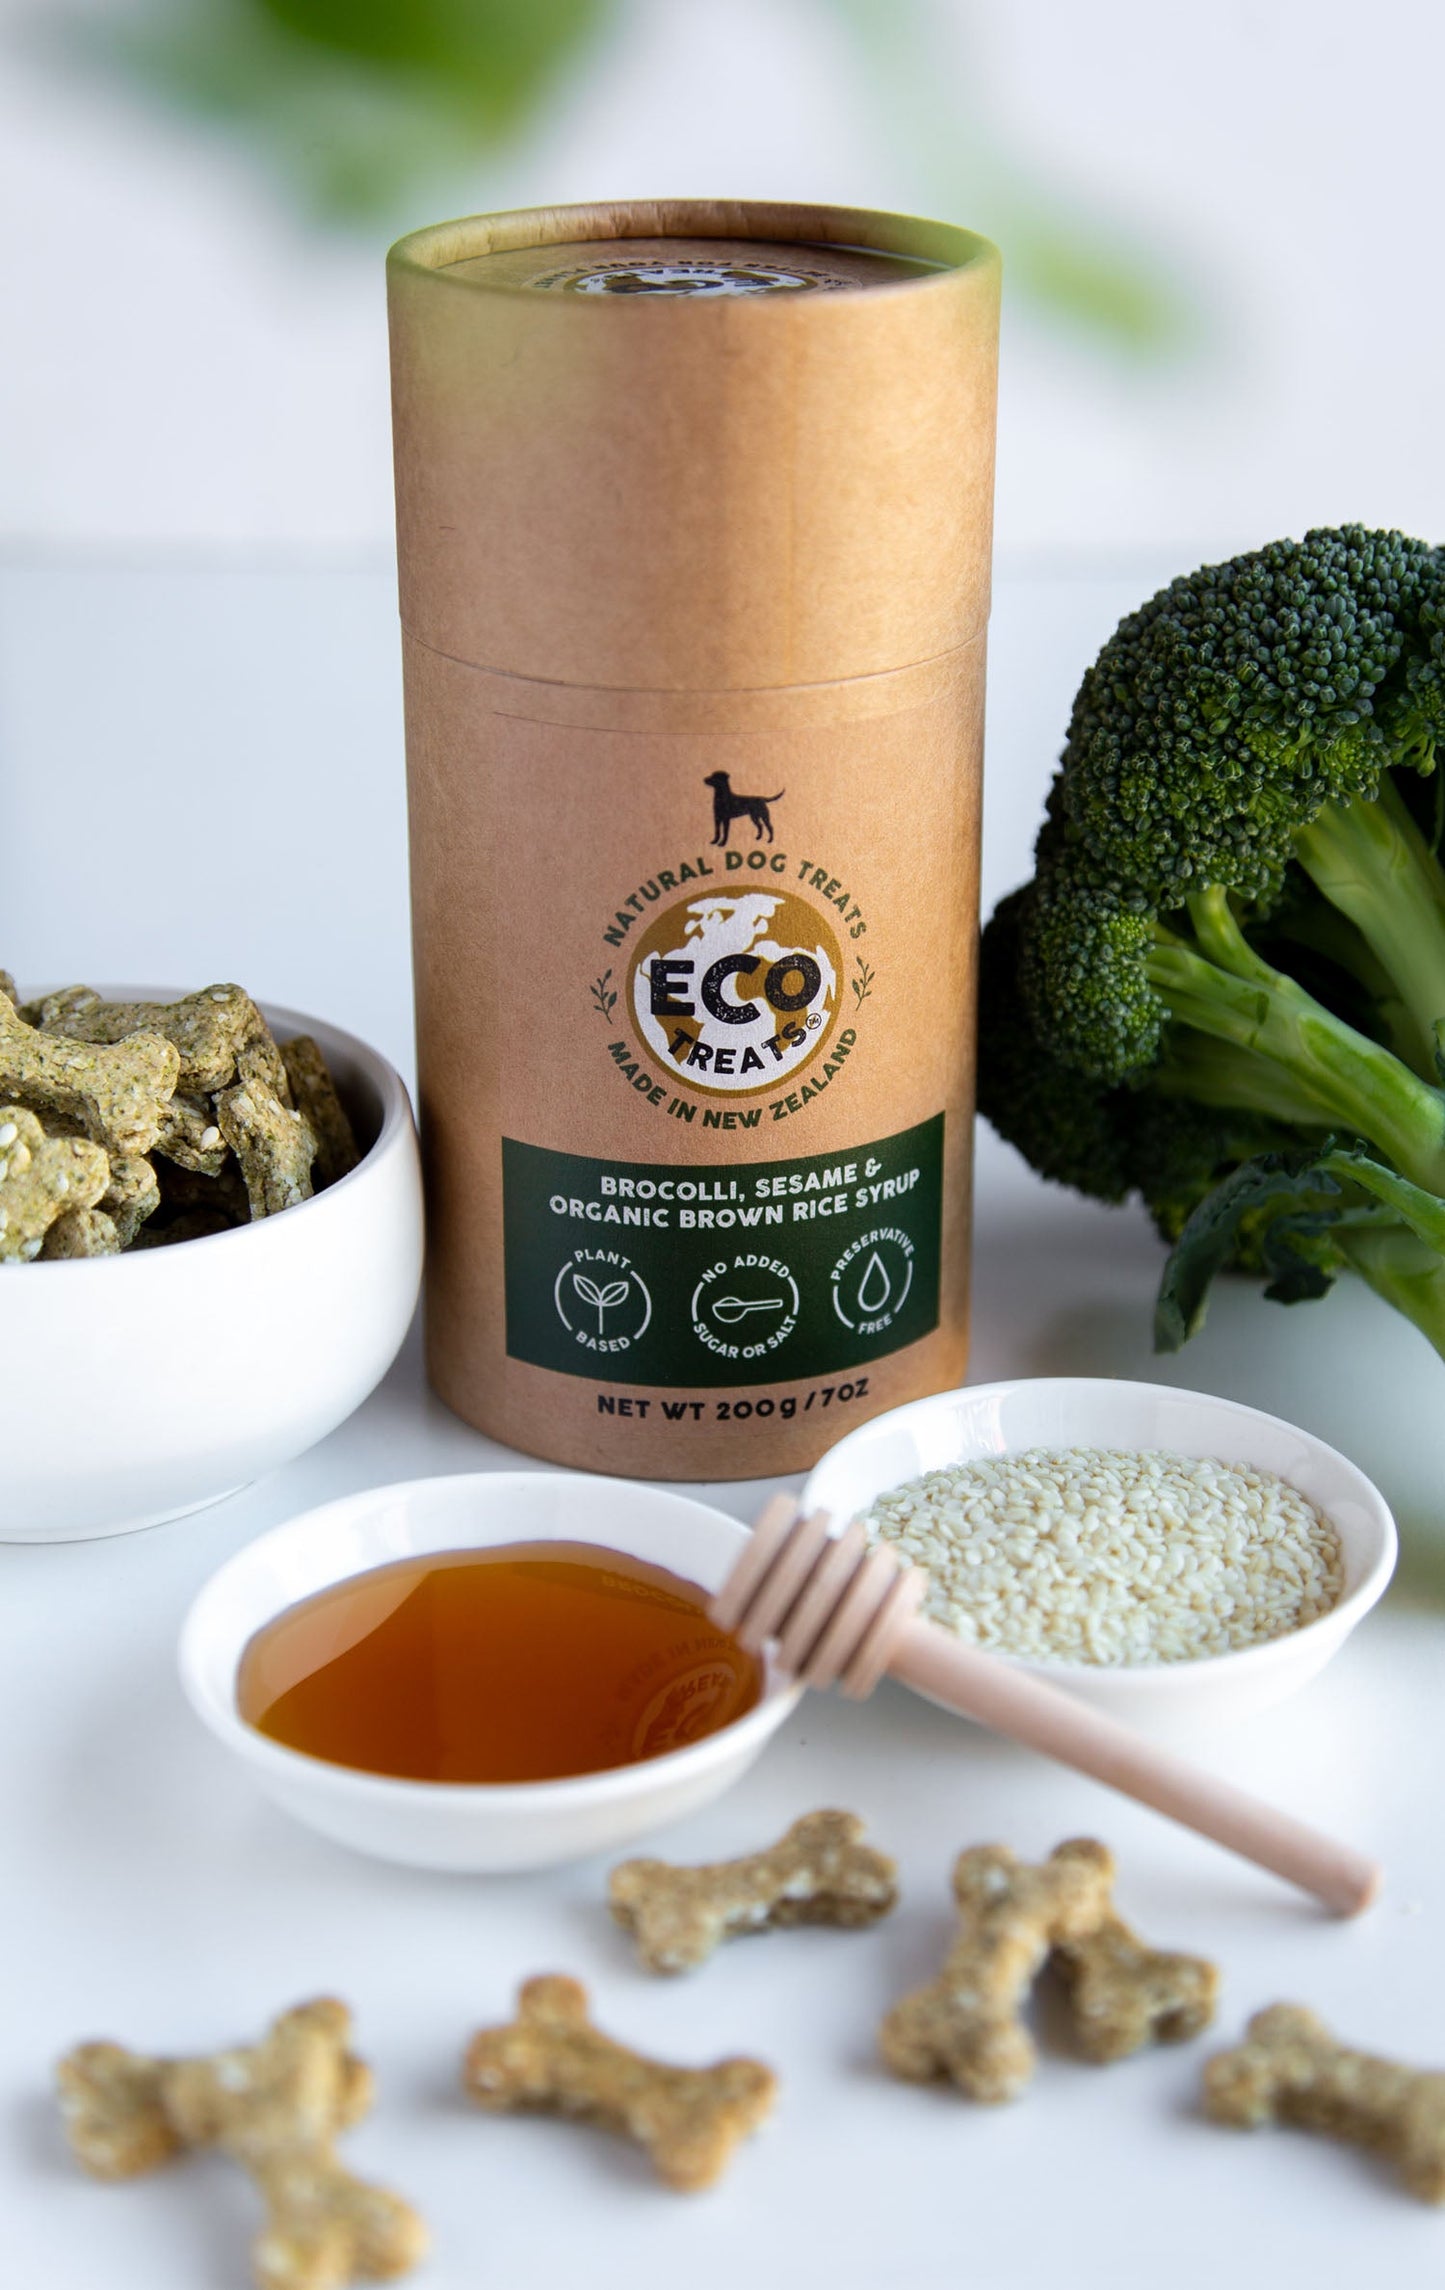 ECO TREATS® Christmas Dog Treats - Broccoli, Sesame & Organic Brown Rice Syrup